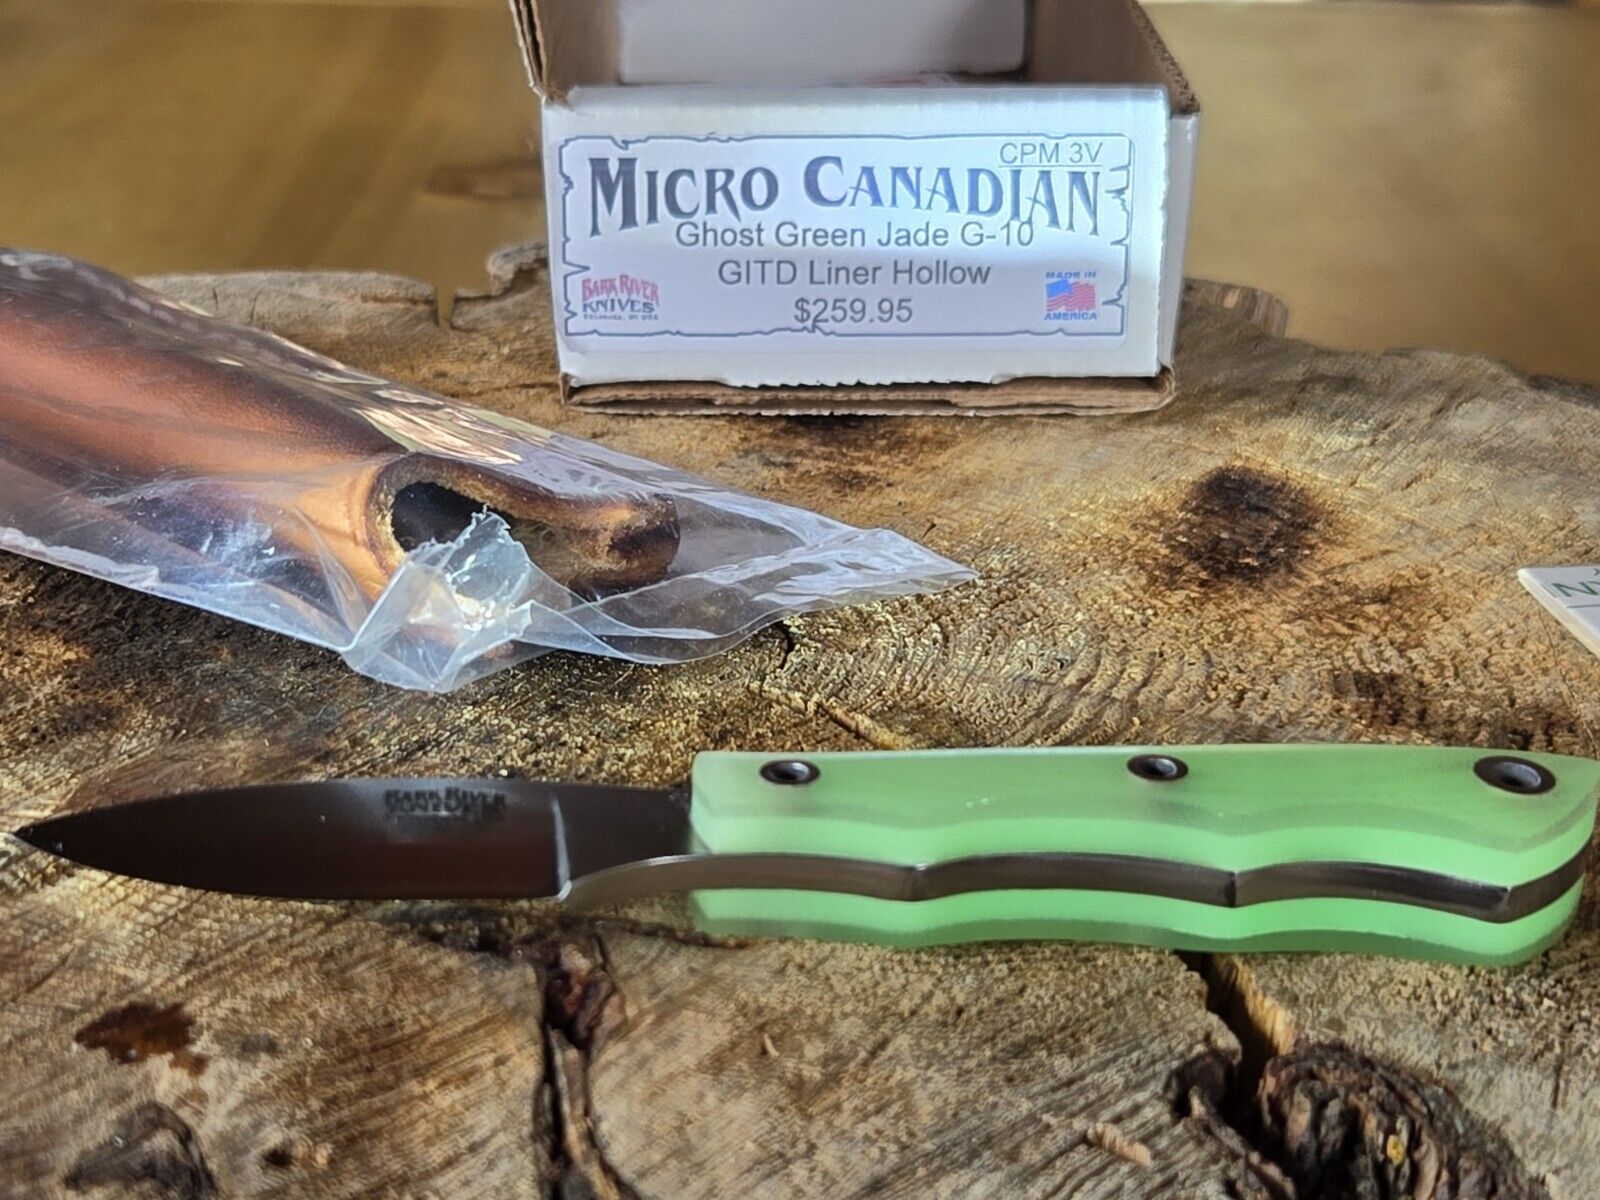 *Bark River Knives Micro Canadian 3V Ghost Green Jade G10, GITD Liner Hollow NEW